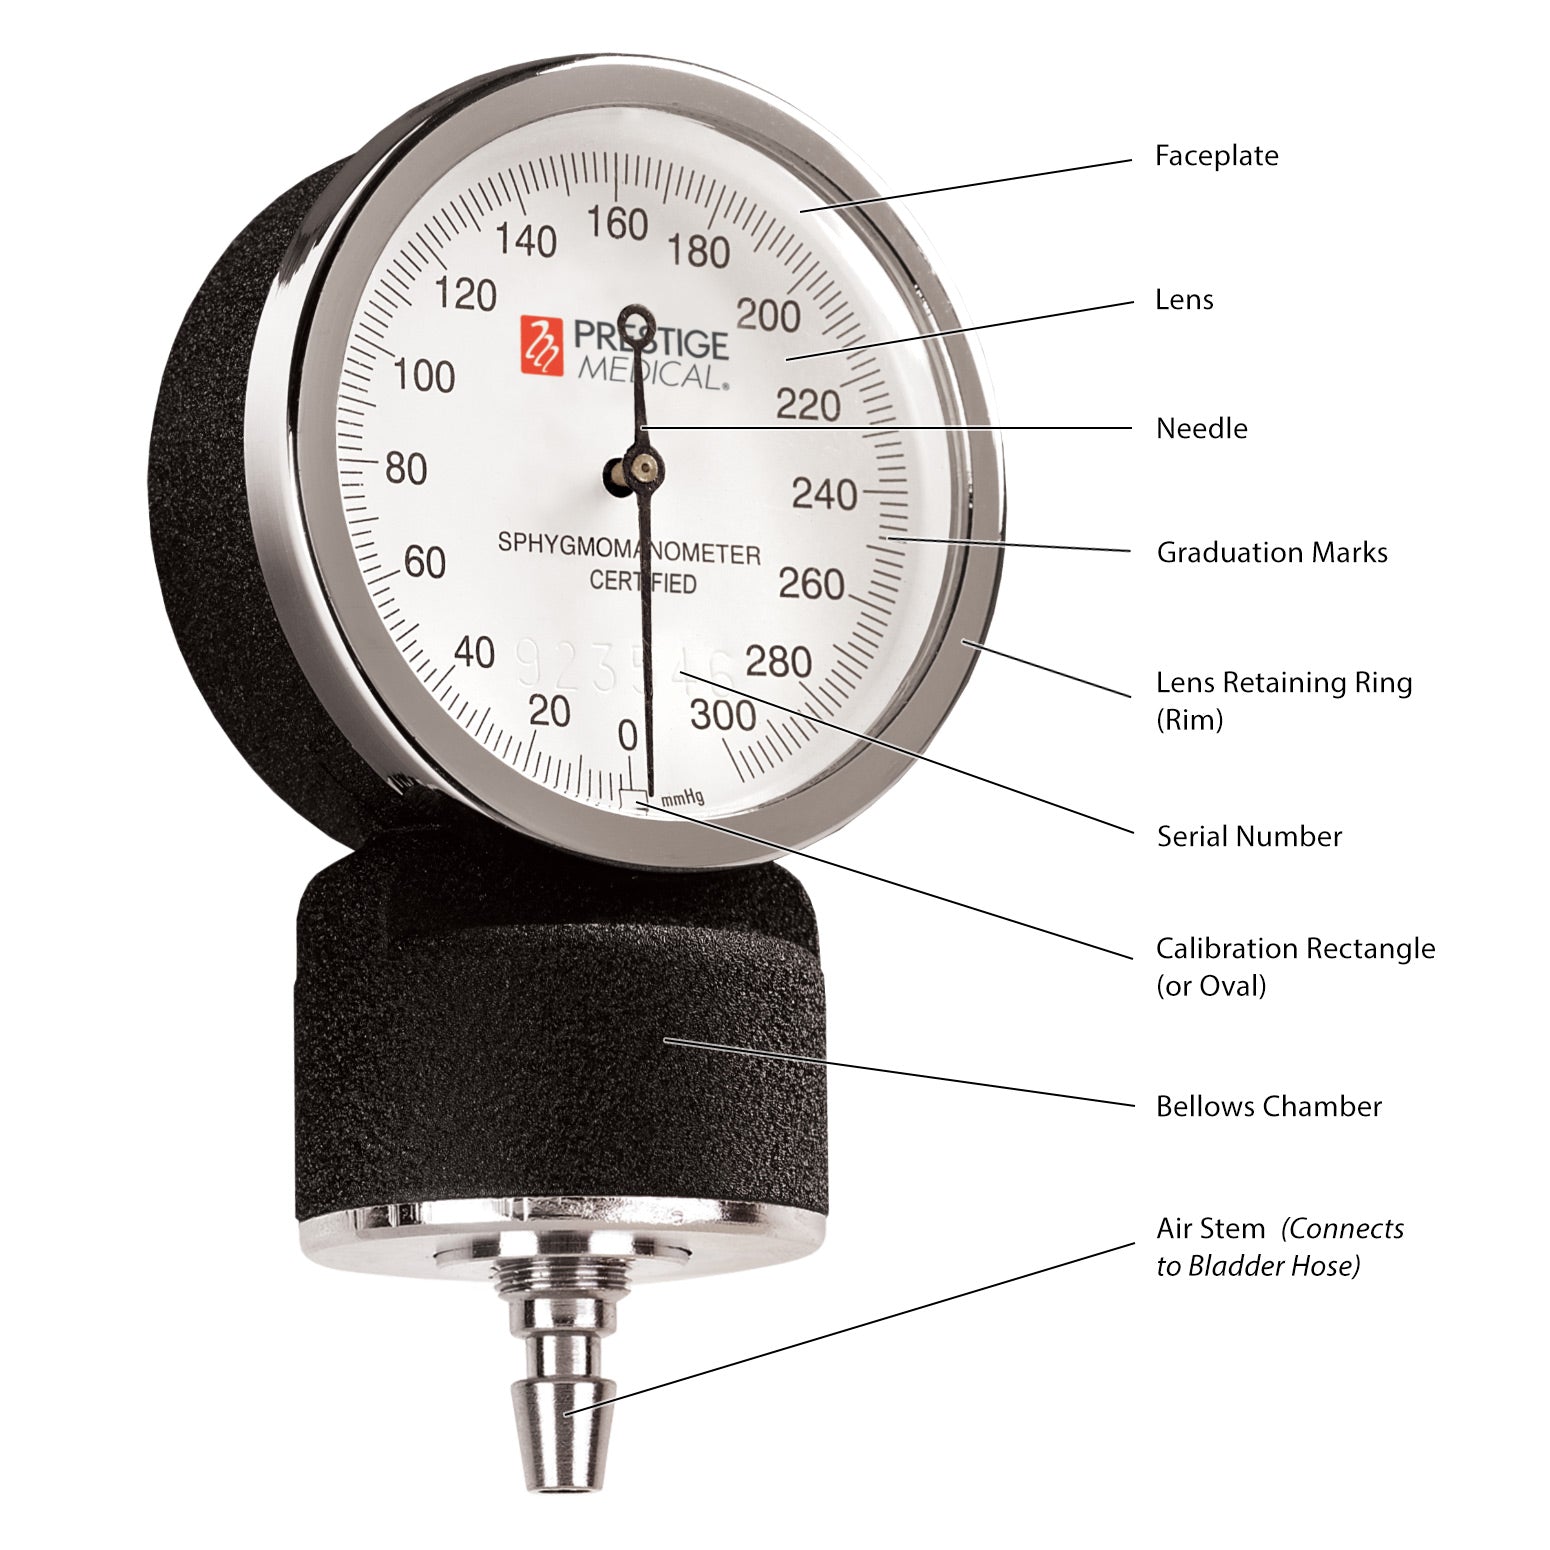 Prestige Medical Premium Aneroid Sphygmomanometer with Carry Case - Senior.com Aneroid Sphygmomanometer